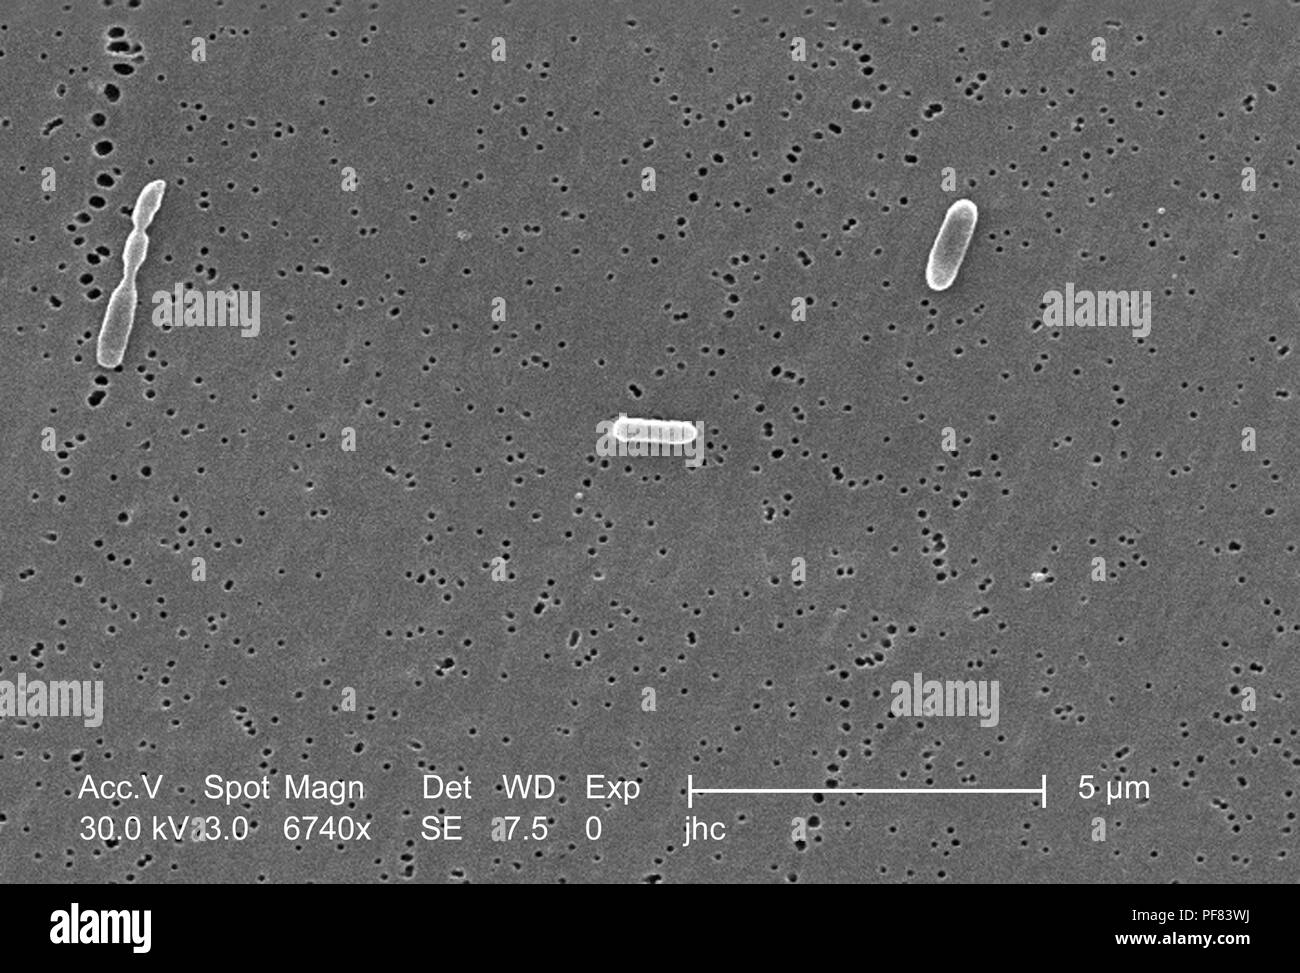 Tre Ralstonia mannitolilytica batteri hanno rivelato in 6740x di scansione ingrandita al microscopio elettronico (SEM) immagine, 2006. Immagine cortesia di centri per il controllo delle malattie (CDC) / Judith Noble-Wang, Ph.D. () Foto Stock